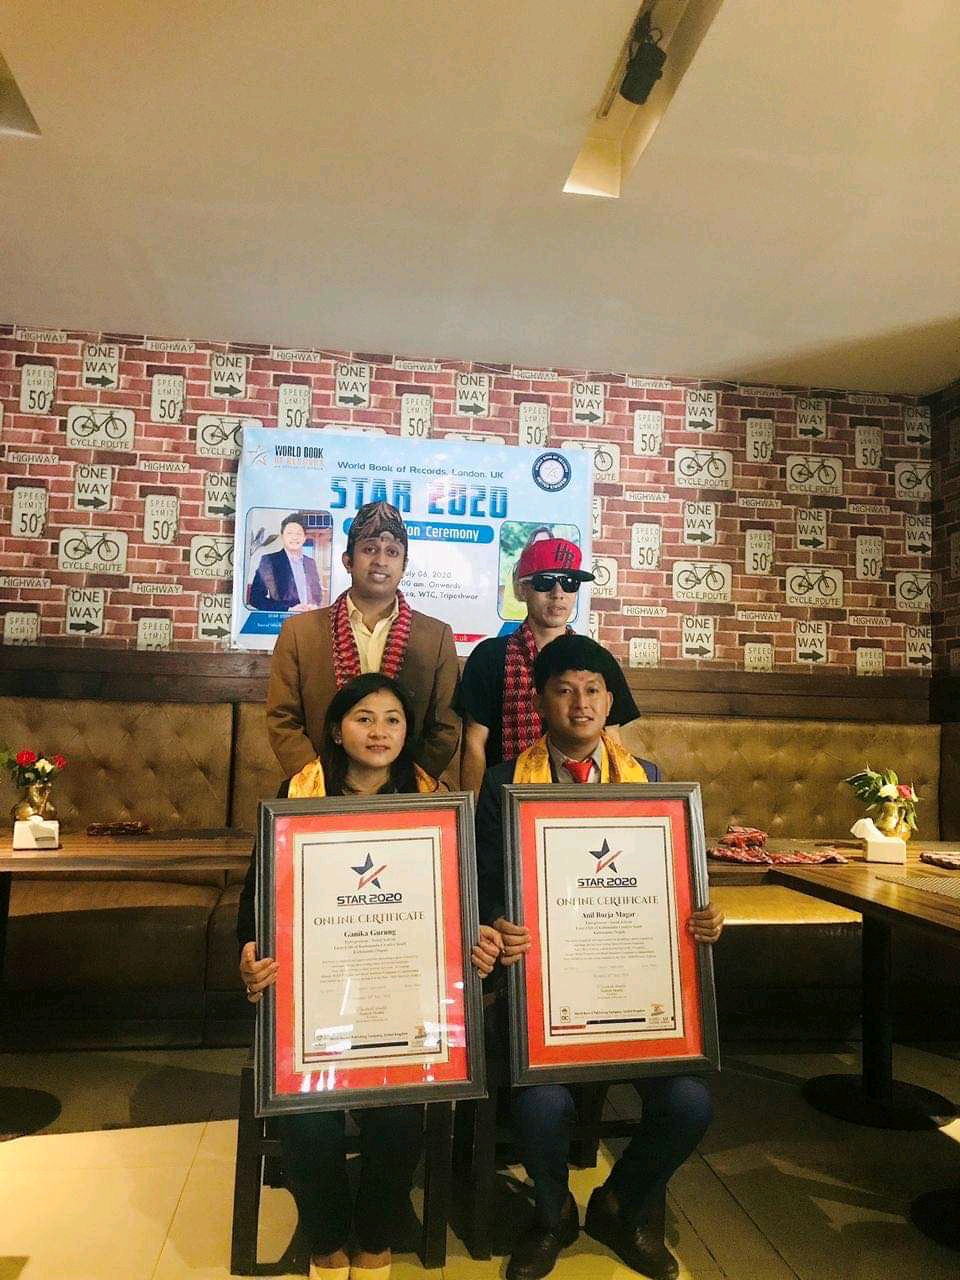 २ नेपाली युवा वल्ड बुक अफ रेकर्ड, लण्डनको STAR 2020 अन्तरार्ष्टिय उपाधिबाट सम्मानित